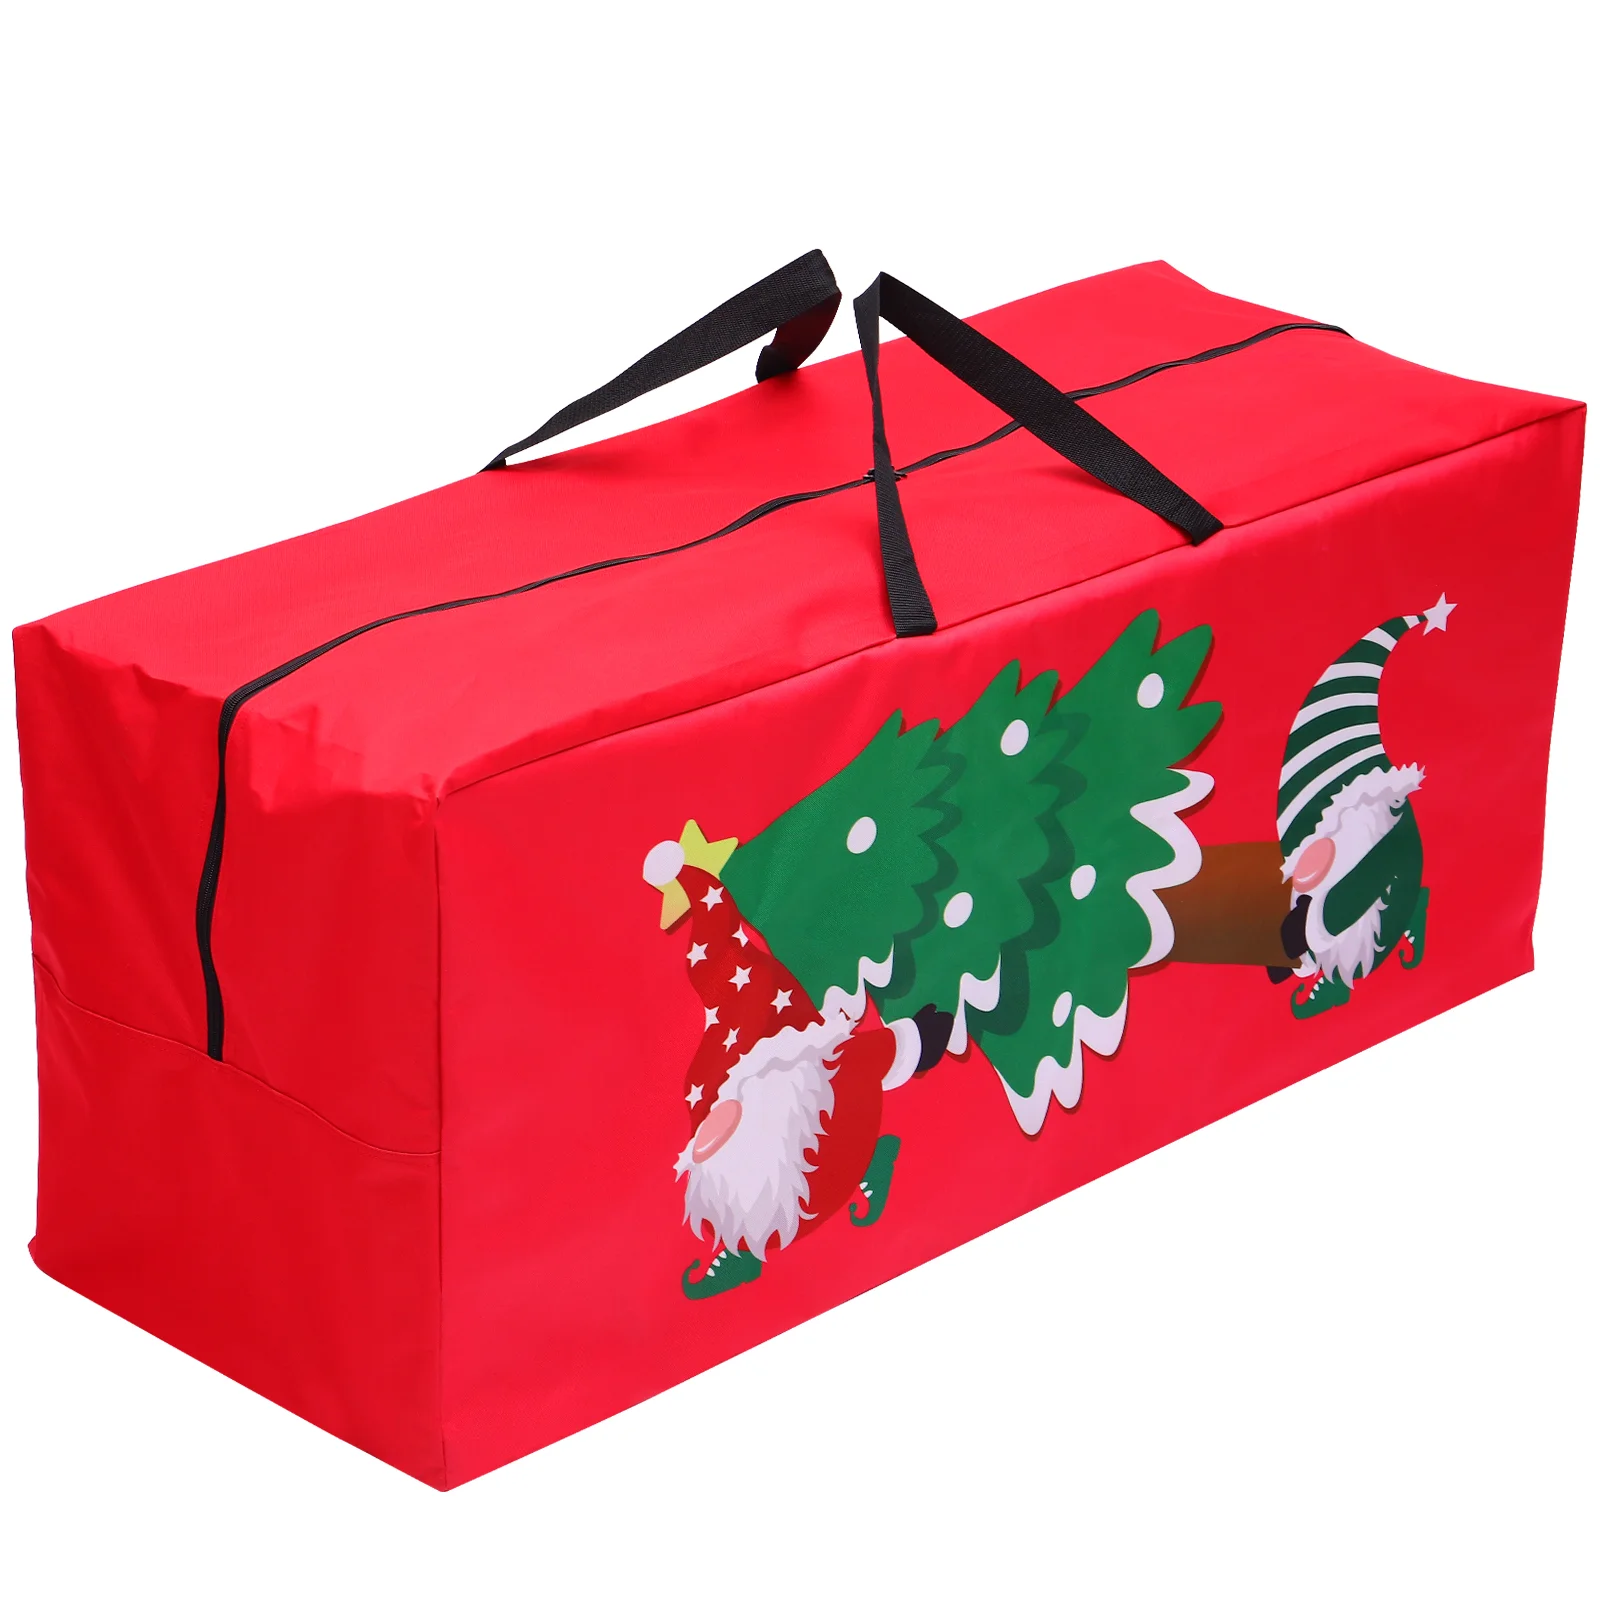 

Пакет для хранения рождественской елки ABOOFAN, подходит для разобранной праздничной елки, Контейнер 50x130x45 см